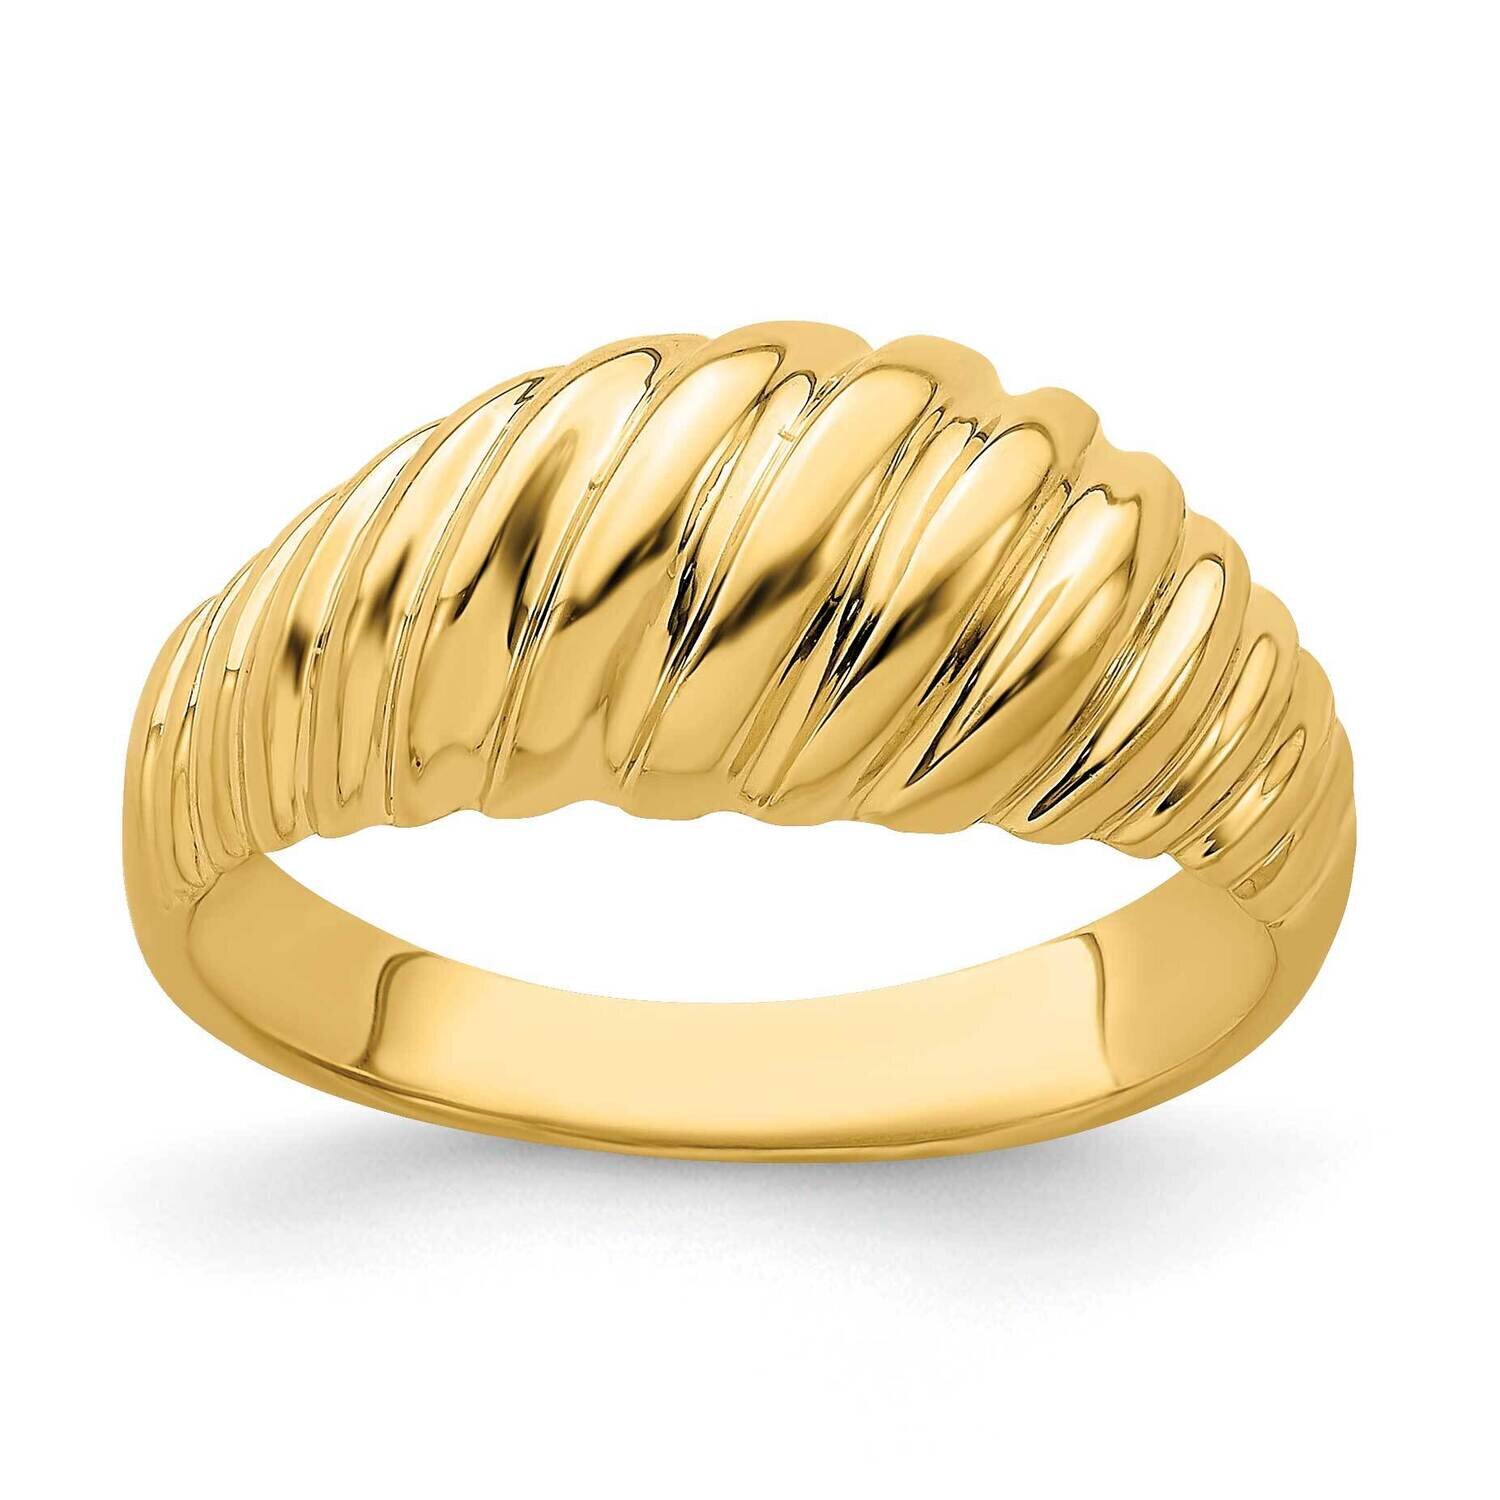 Shrimp Dome Ring 14k Gold Polished R717